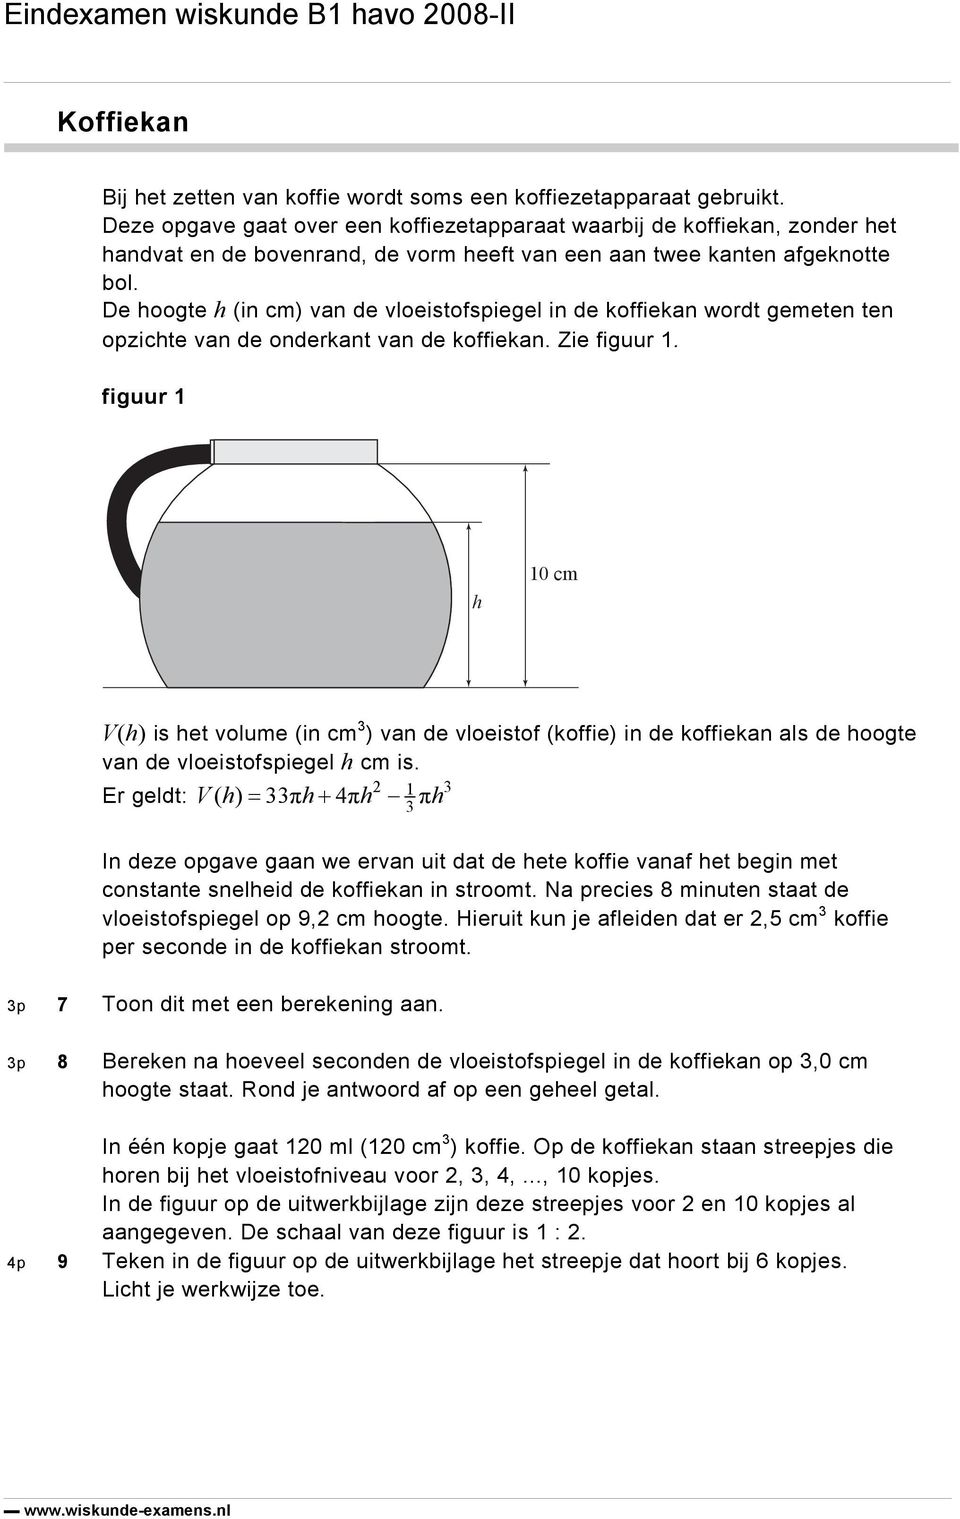 De hoogte h (in cm) van de vloeistofspiegel in de koffiekan wordt gemeten ten opzichte van de onderkant van de koffiekan. Zie figuur 1.